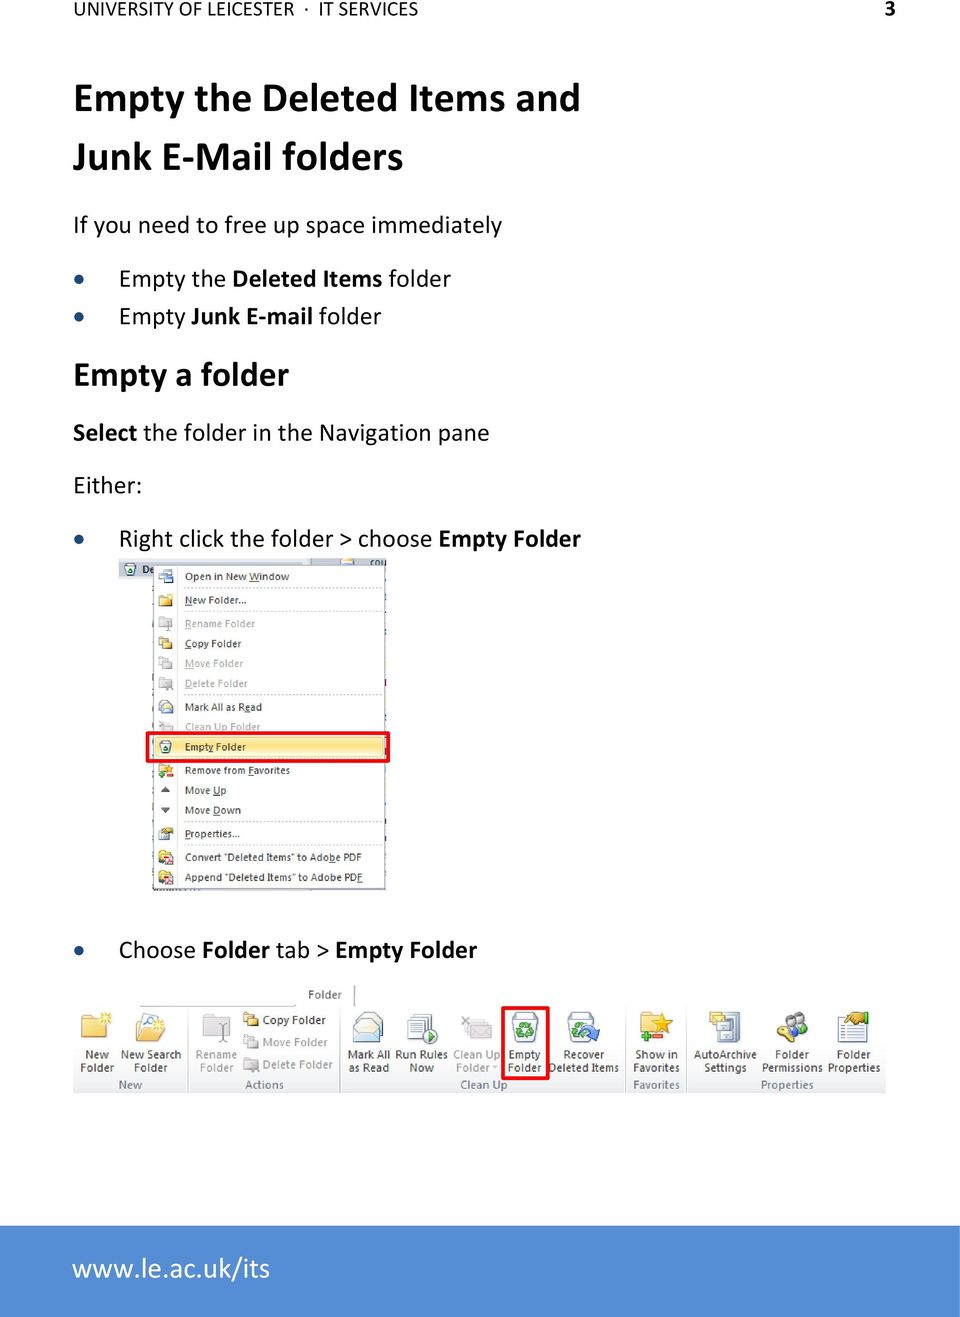 Empty Junk E-mail folder Empty a folder Select the folder in the Navigation pane